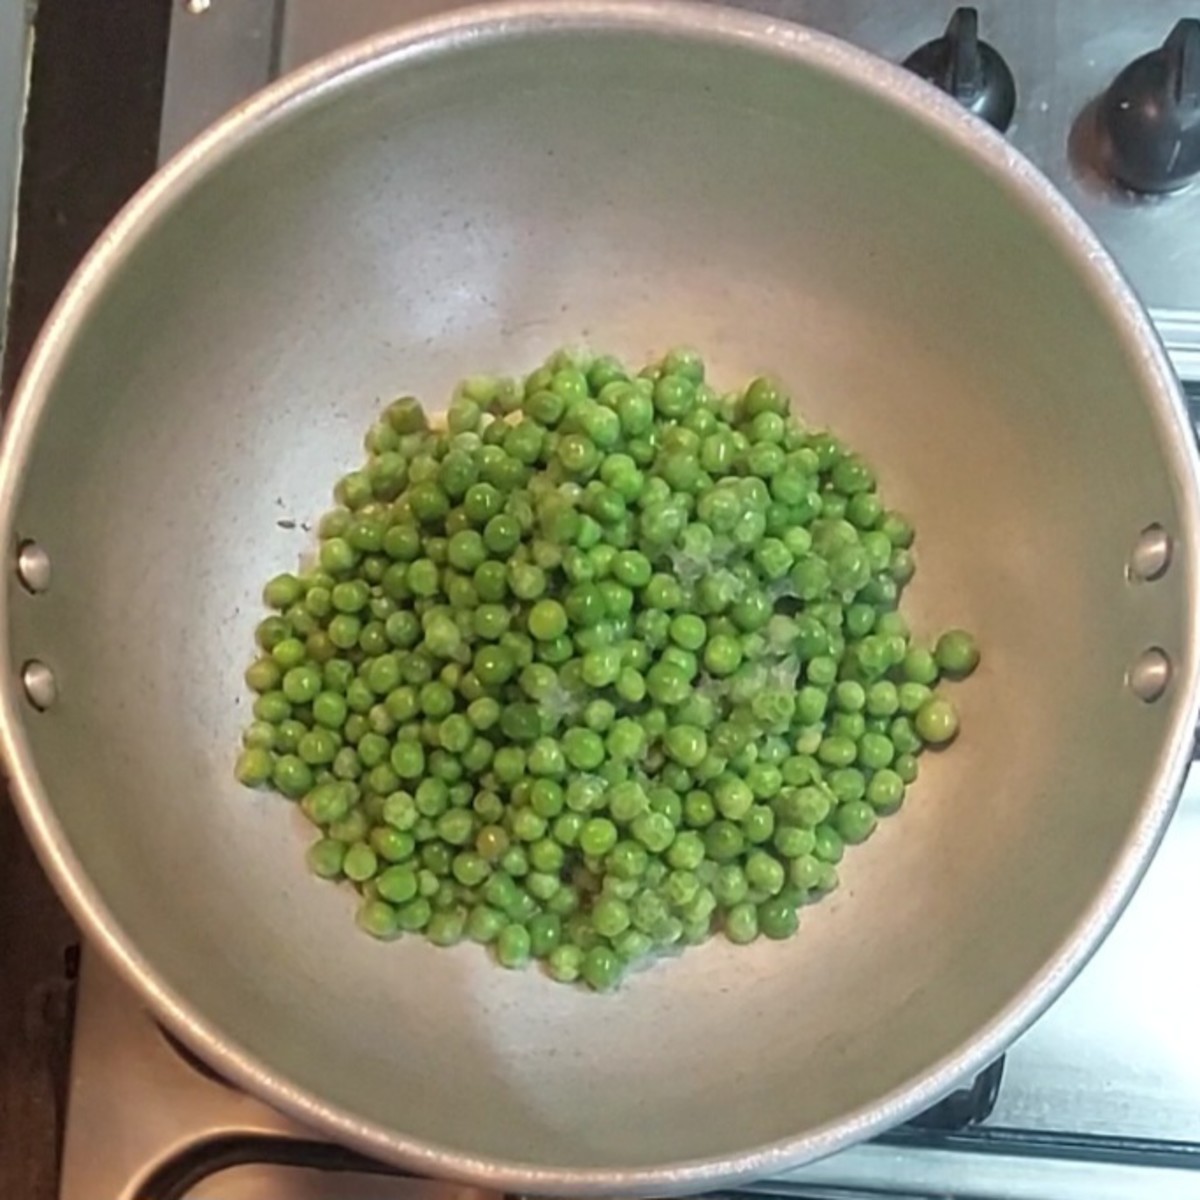 Add 2 cups frozen peas, salt to taste.